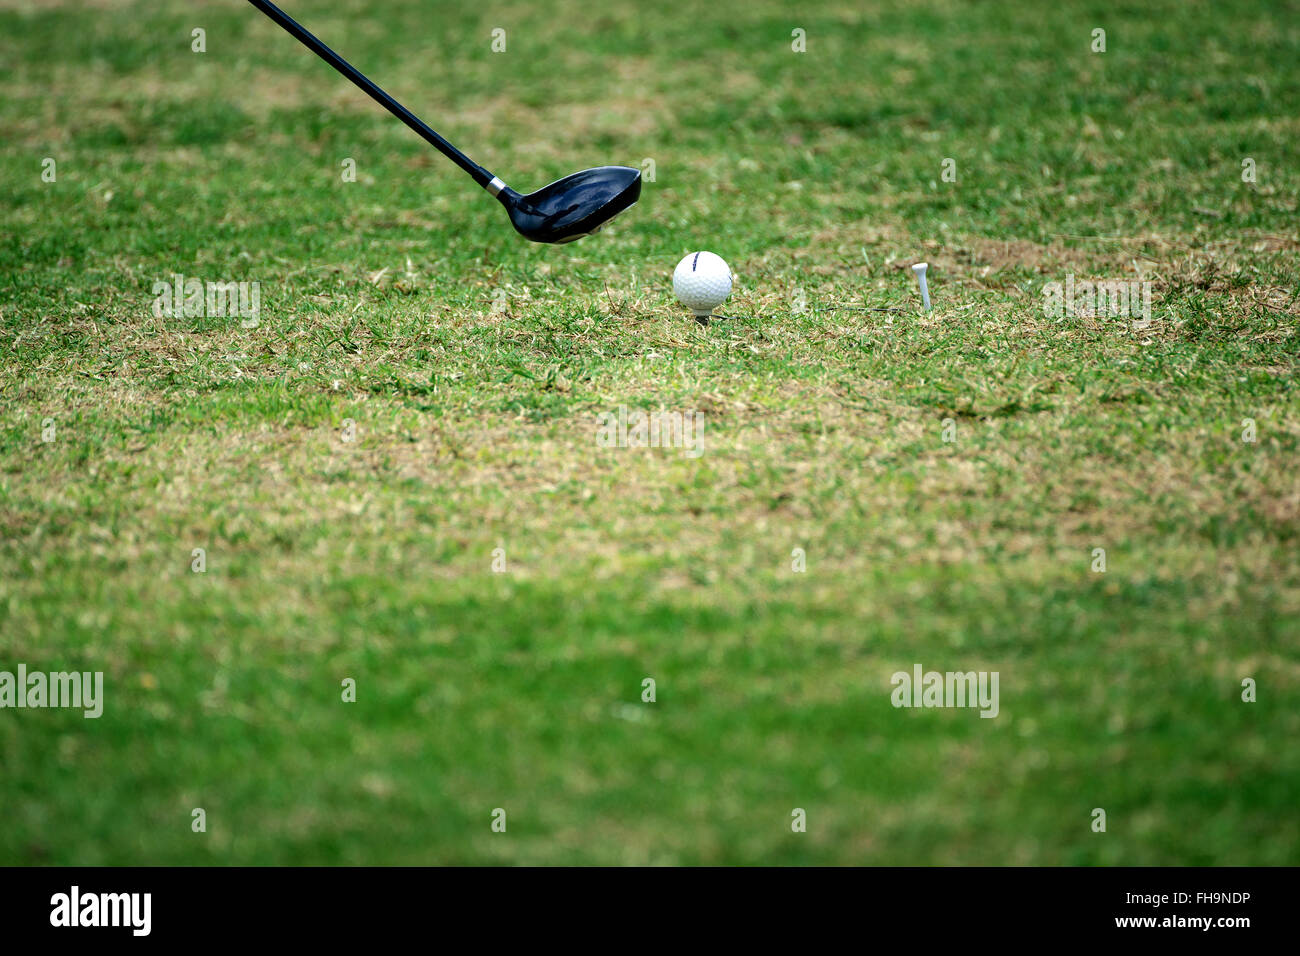 L'équipement de golf, balle de golf avec tee sur le cours. Banque D'Images